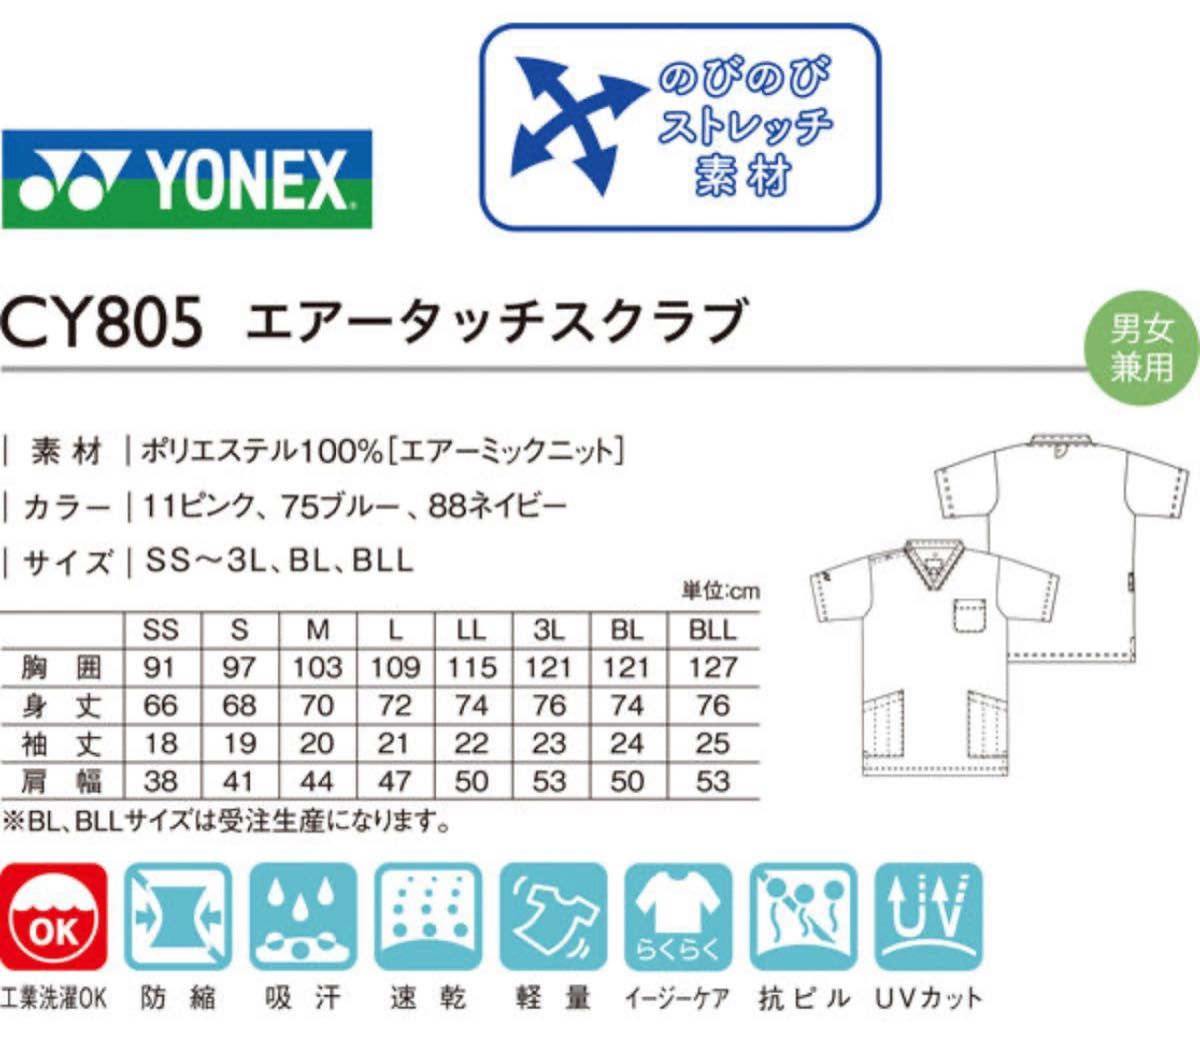 未使用期間限定セール中/ヨネックスYONEXメディカル用ウェア☆スクラブCY805-75-LL /タグ付き